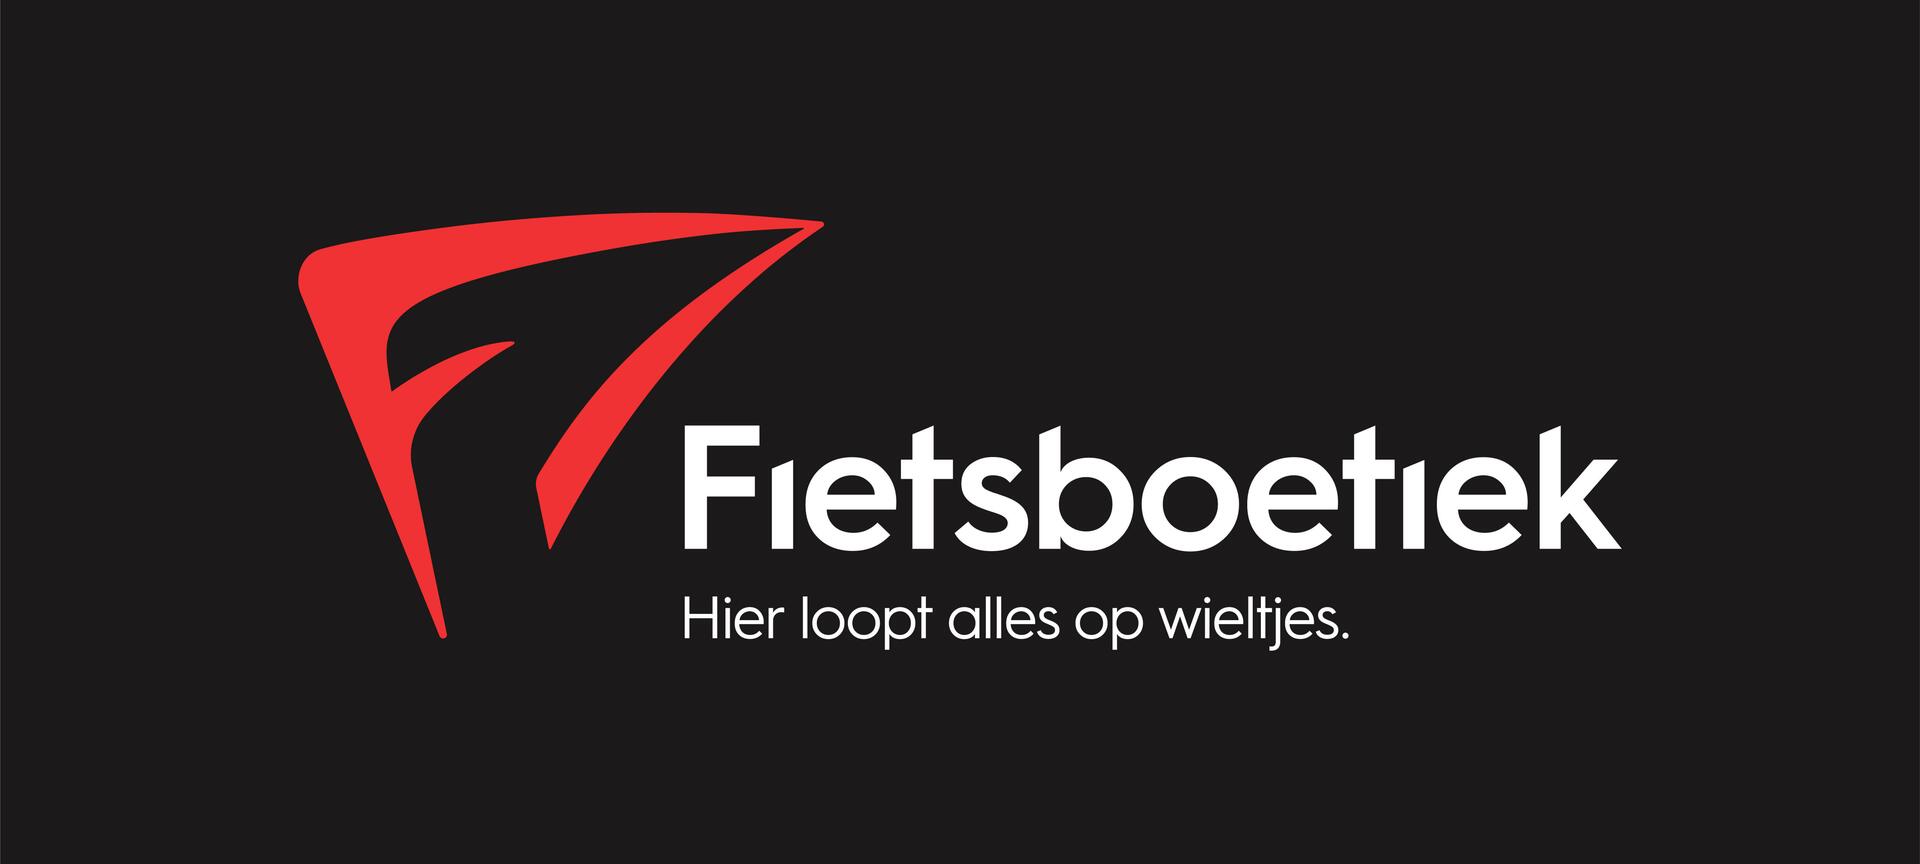 Fietsverhuur Fietsboetiek - regio Bosland - Logo